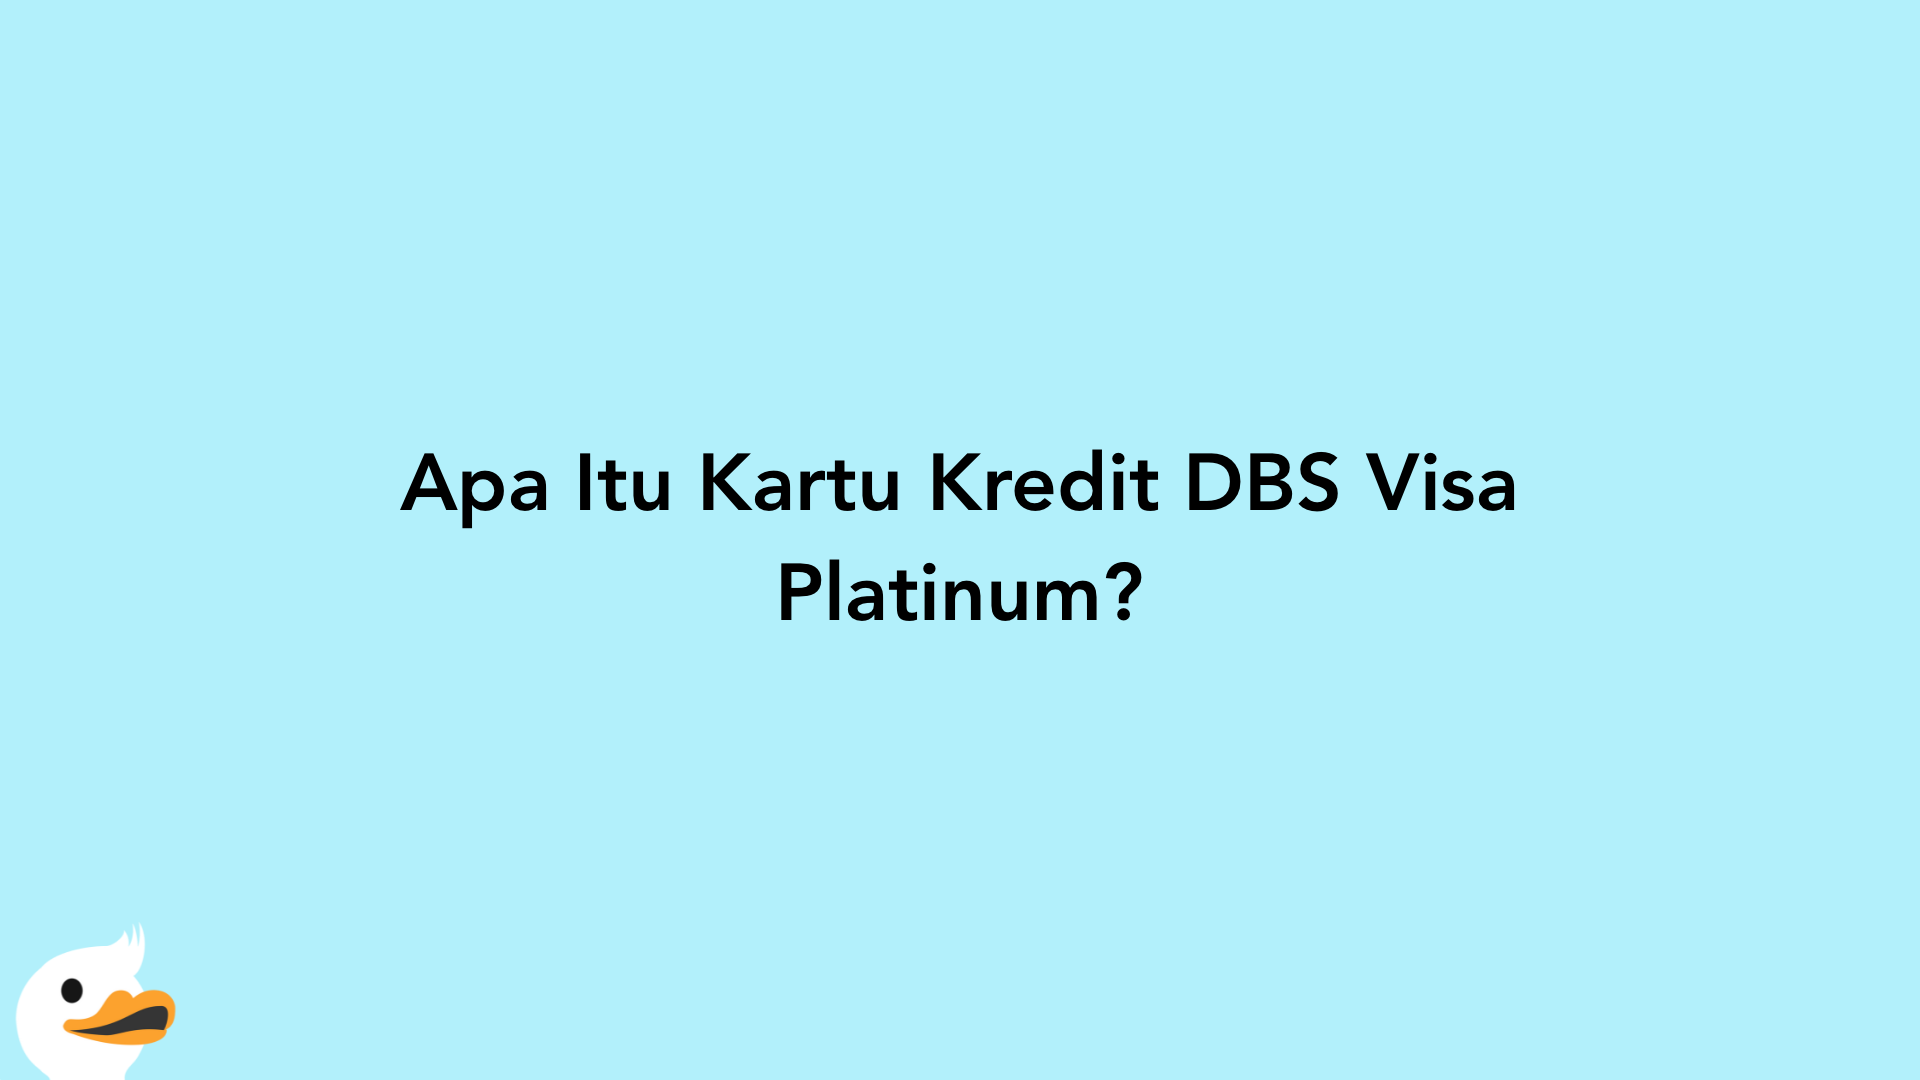 Apa Itu Kartu Kredit DBS Visa Platinum?